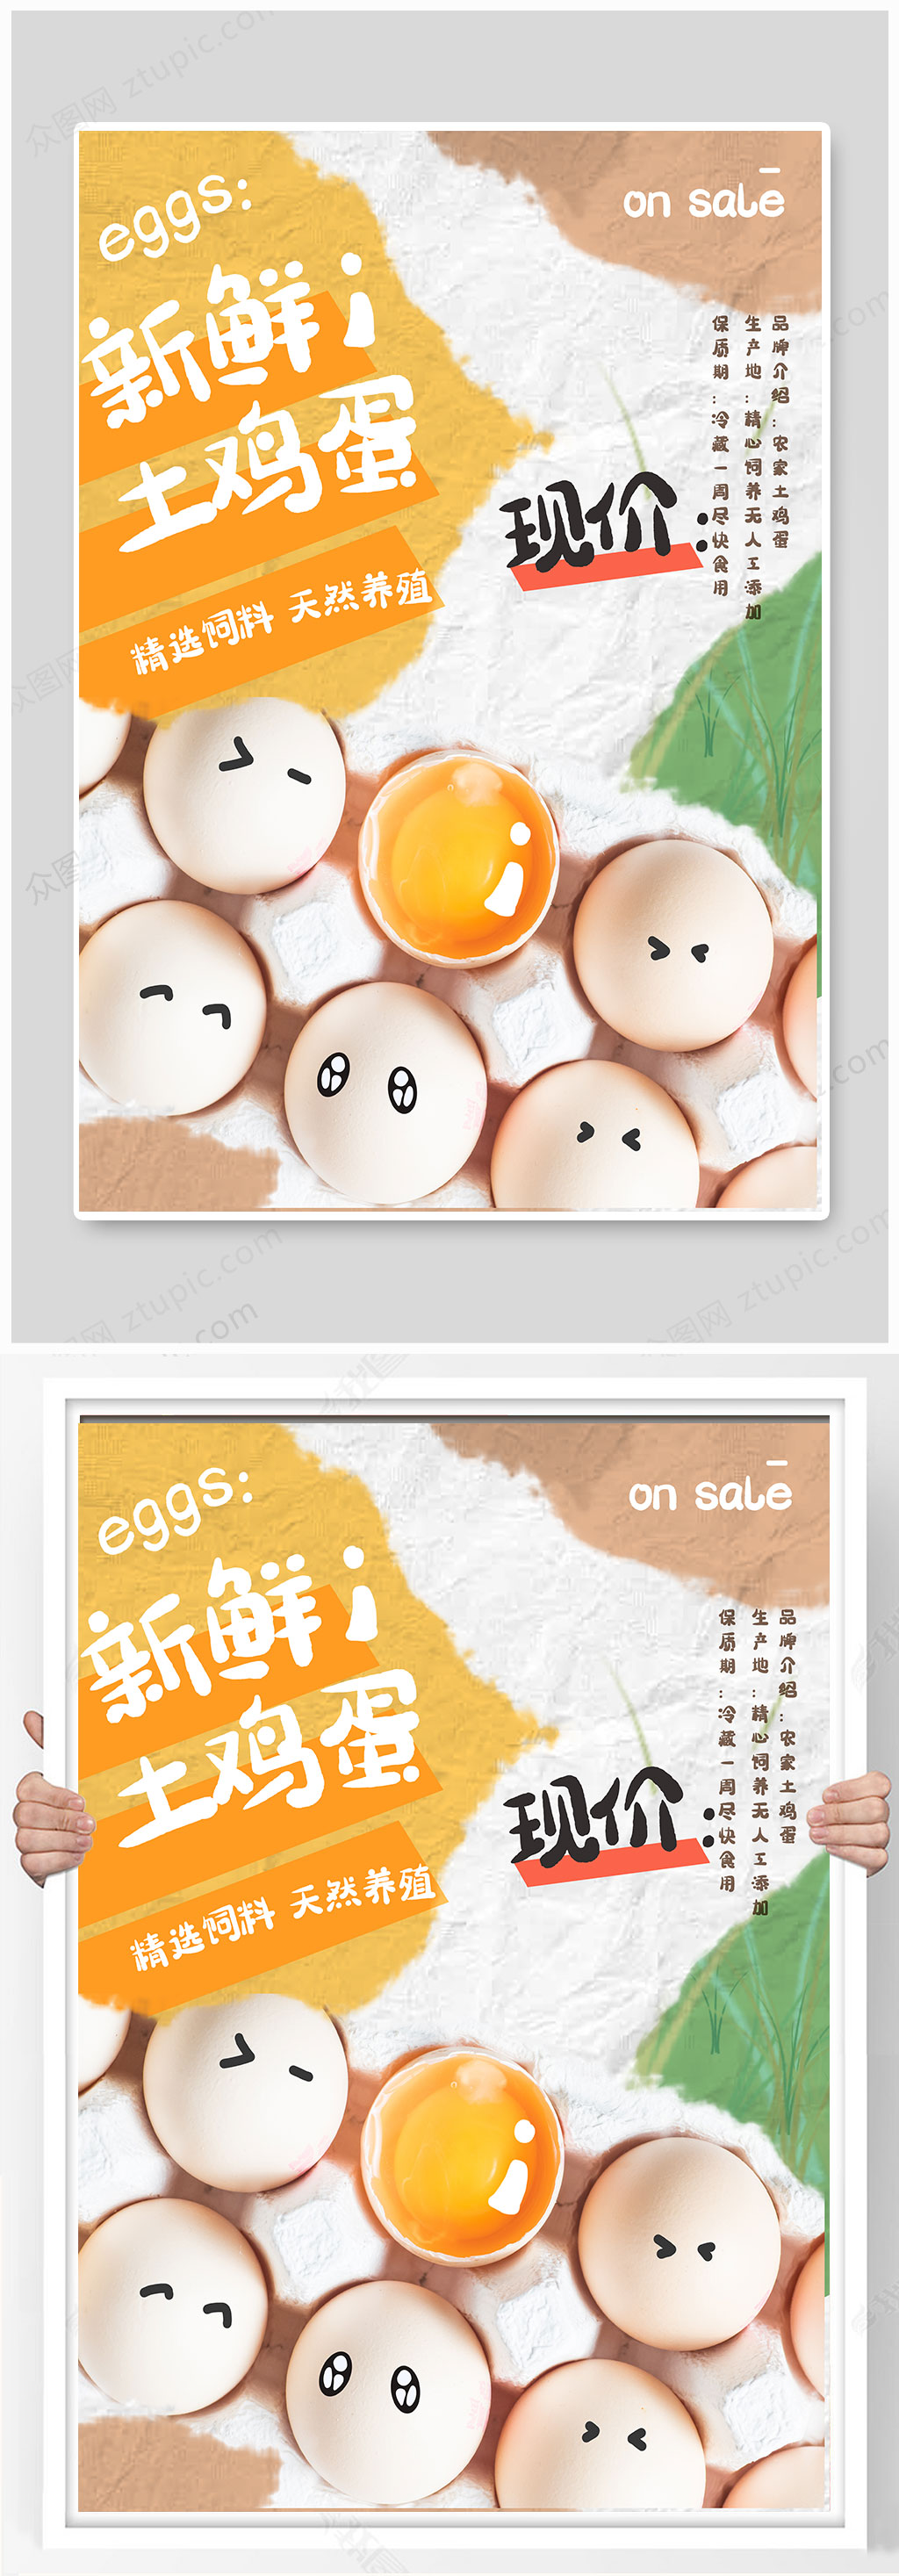 鸡蛋促销拼贴土鸡蛋海报